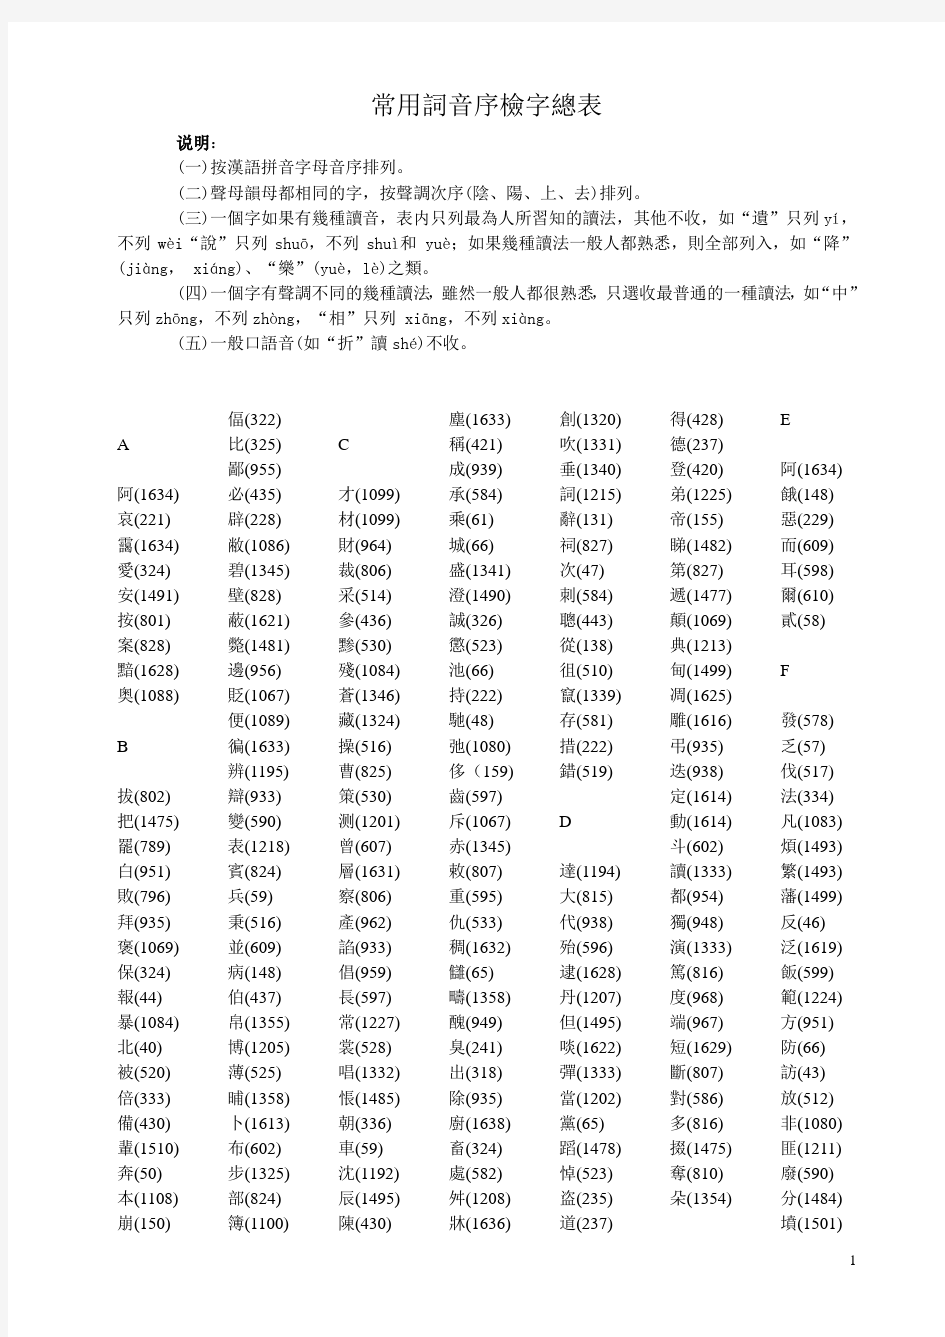 王力《古代汉语》常用词音序检字表-完美排版